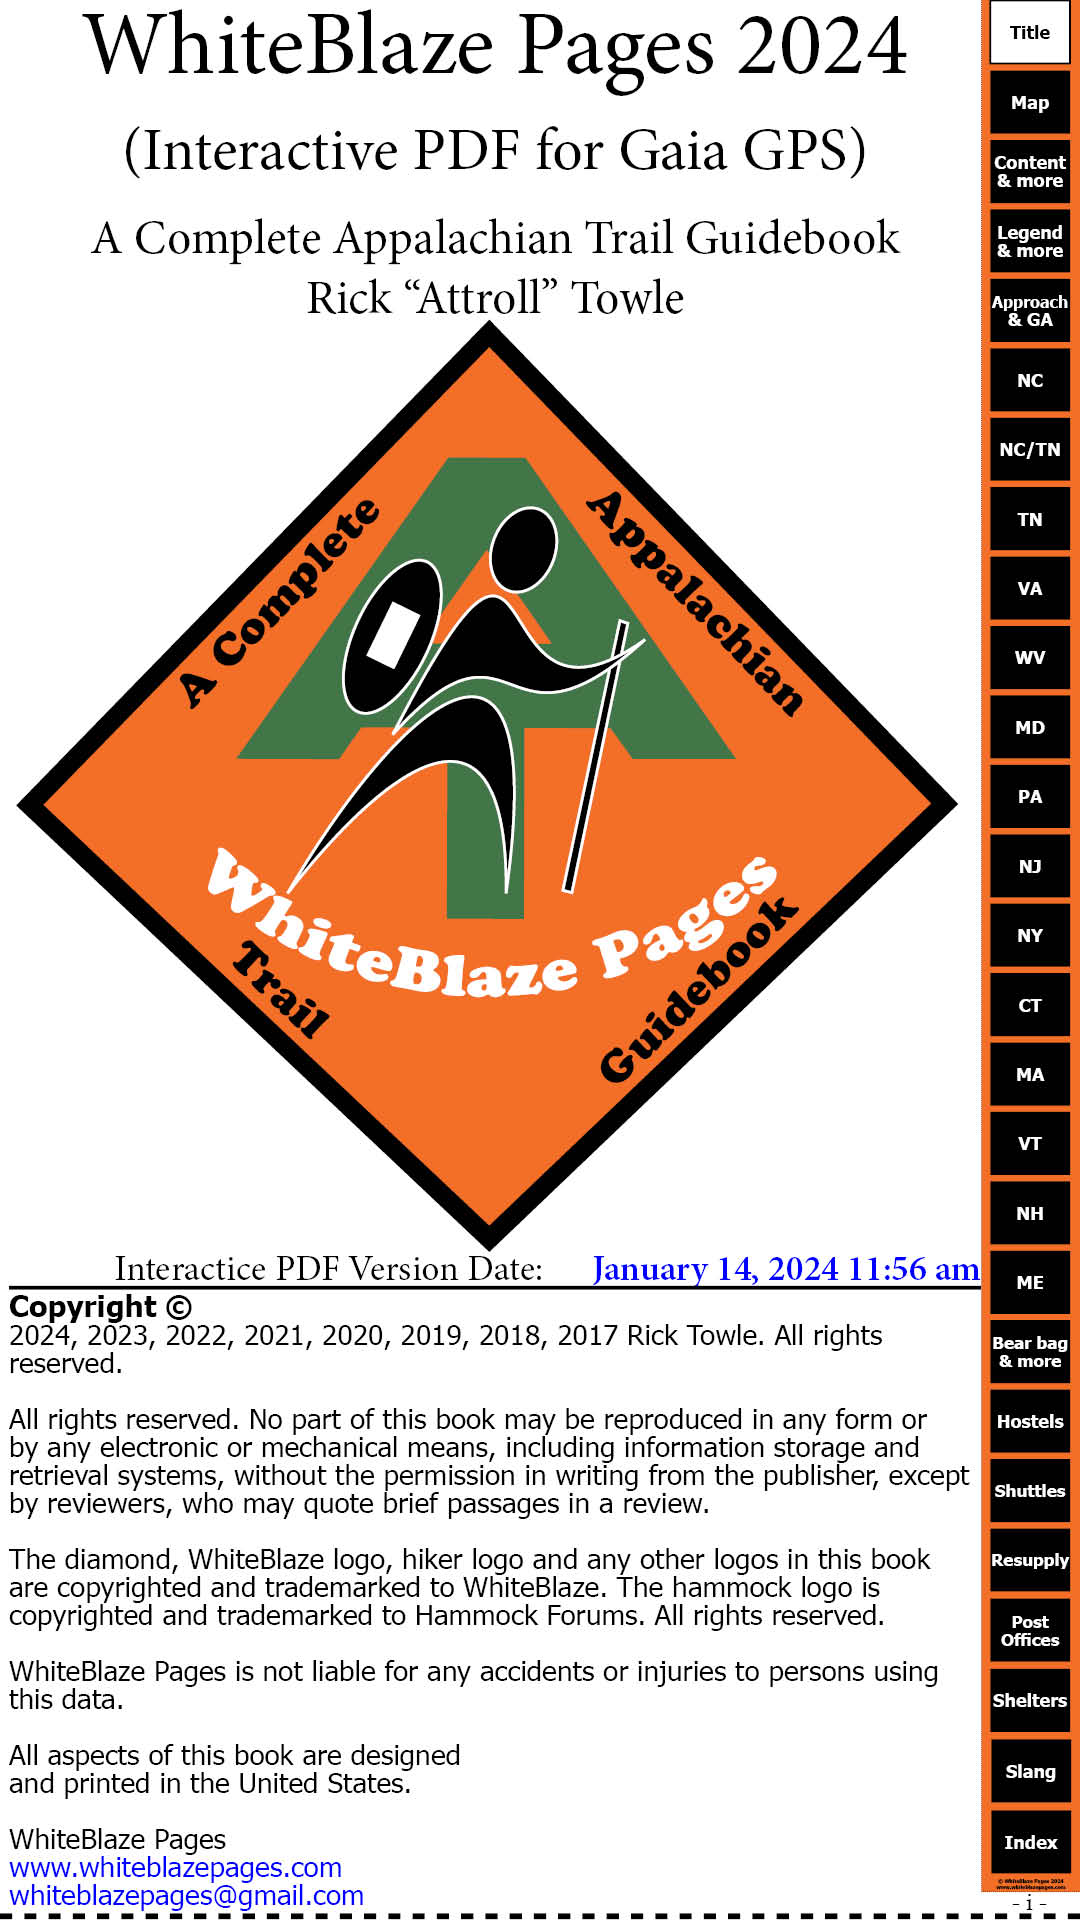 2023 Whiteblaze Pages cover